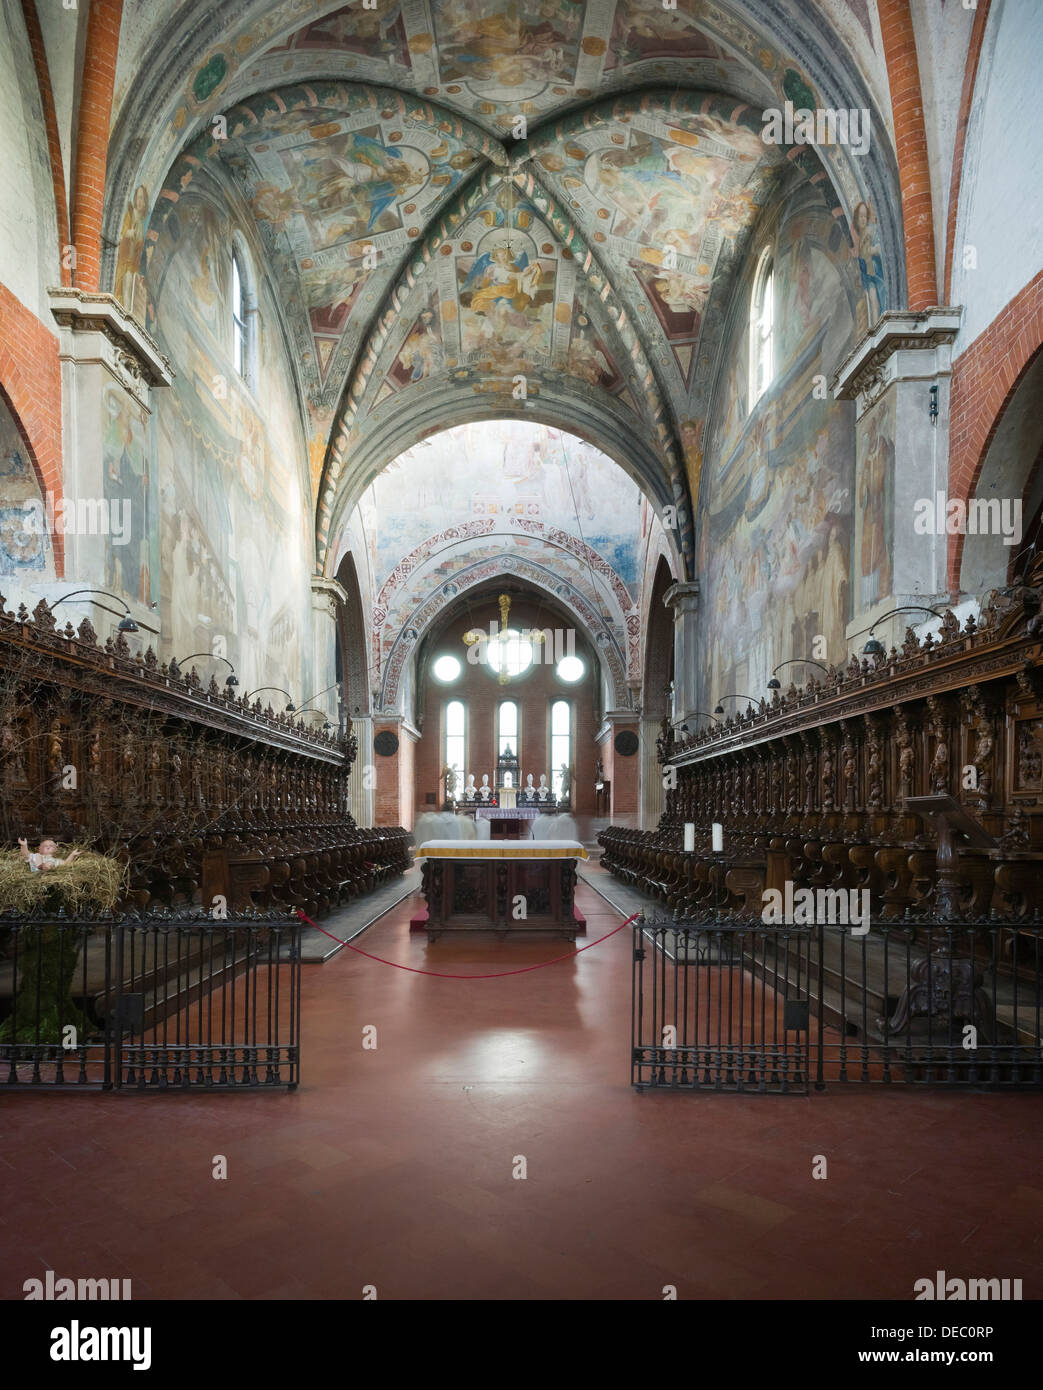 Choir stalls and choir of the Gothic Chiaravalle Abbey, Abbazia Chiaravalle Milanese, Rogoredo, Milan, Lombardy, Italy Stock Photo